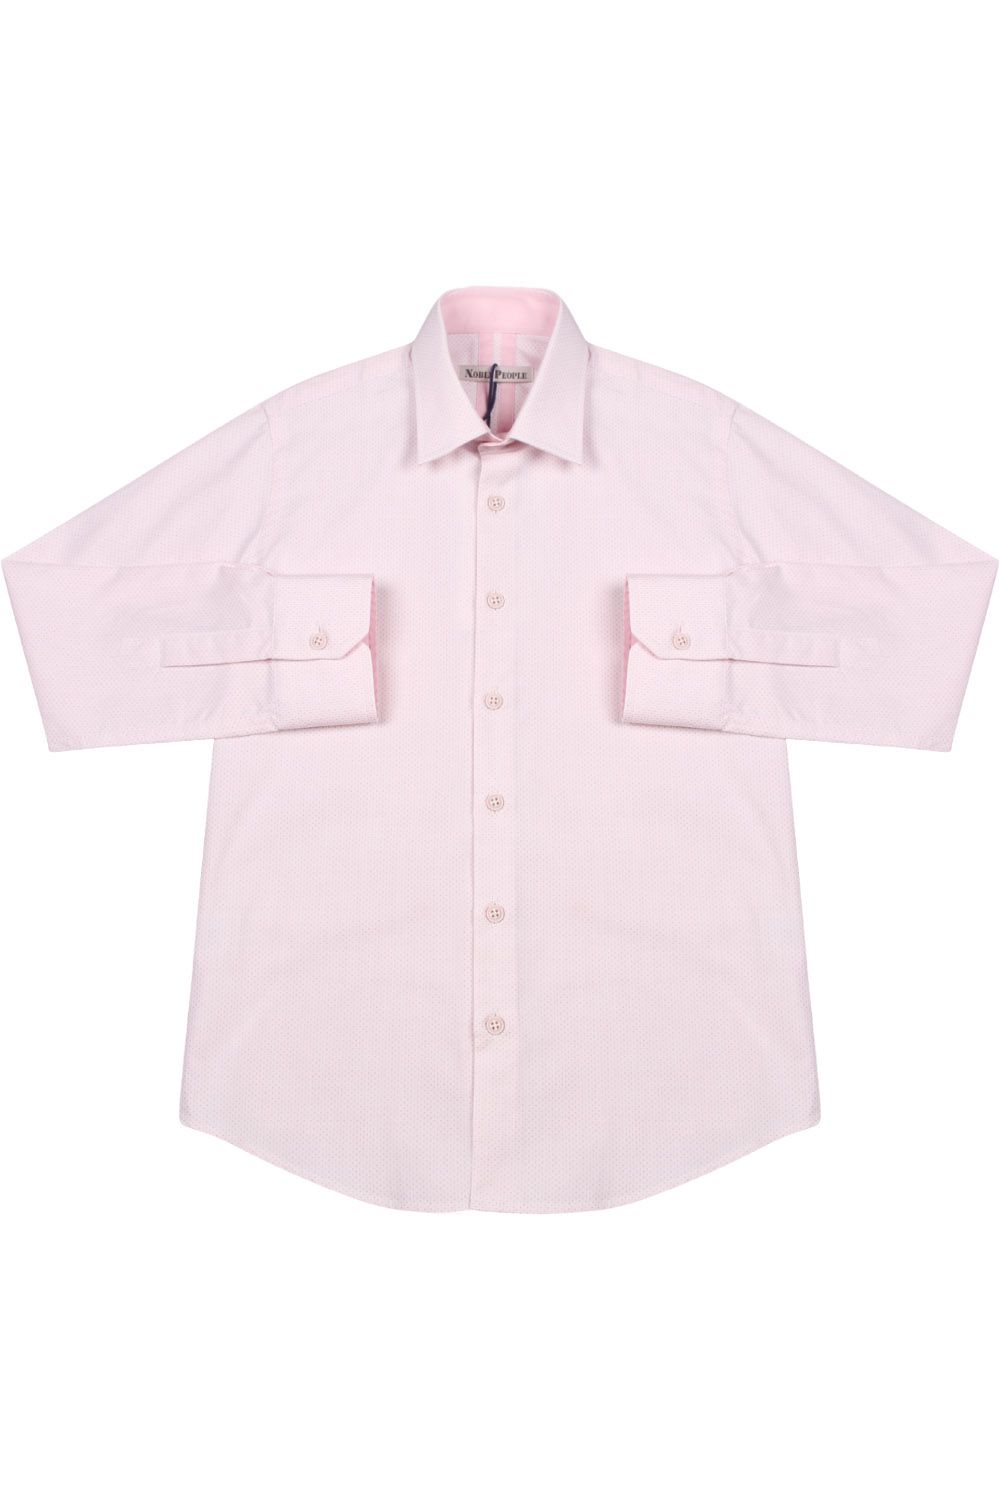 Рубашка Noble People, размер 140, цвет розовый - фото 2